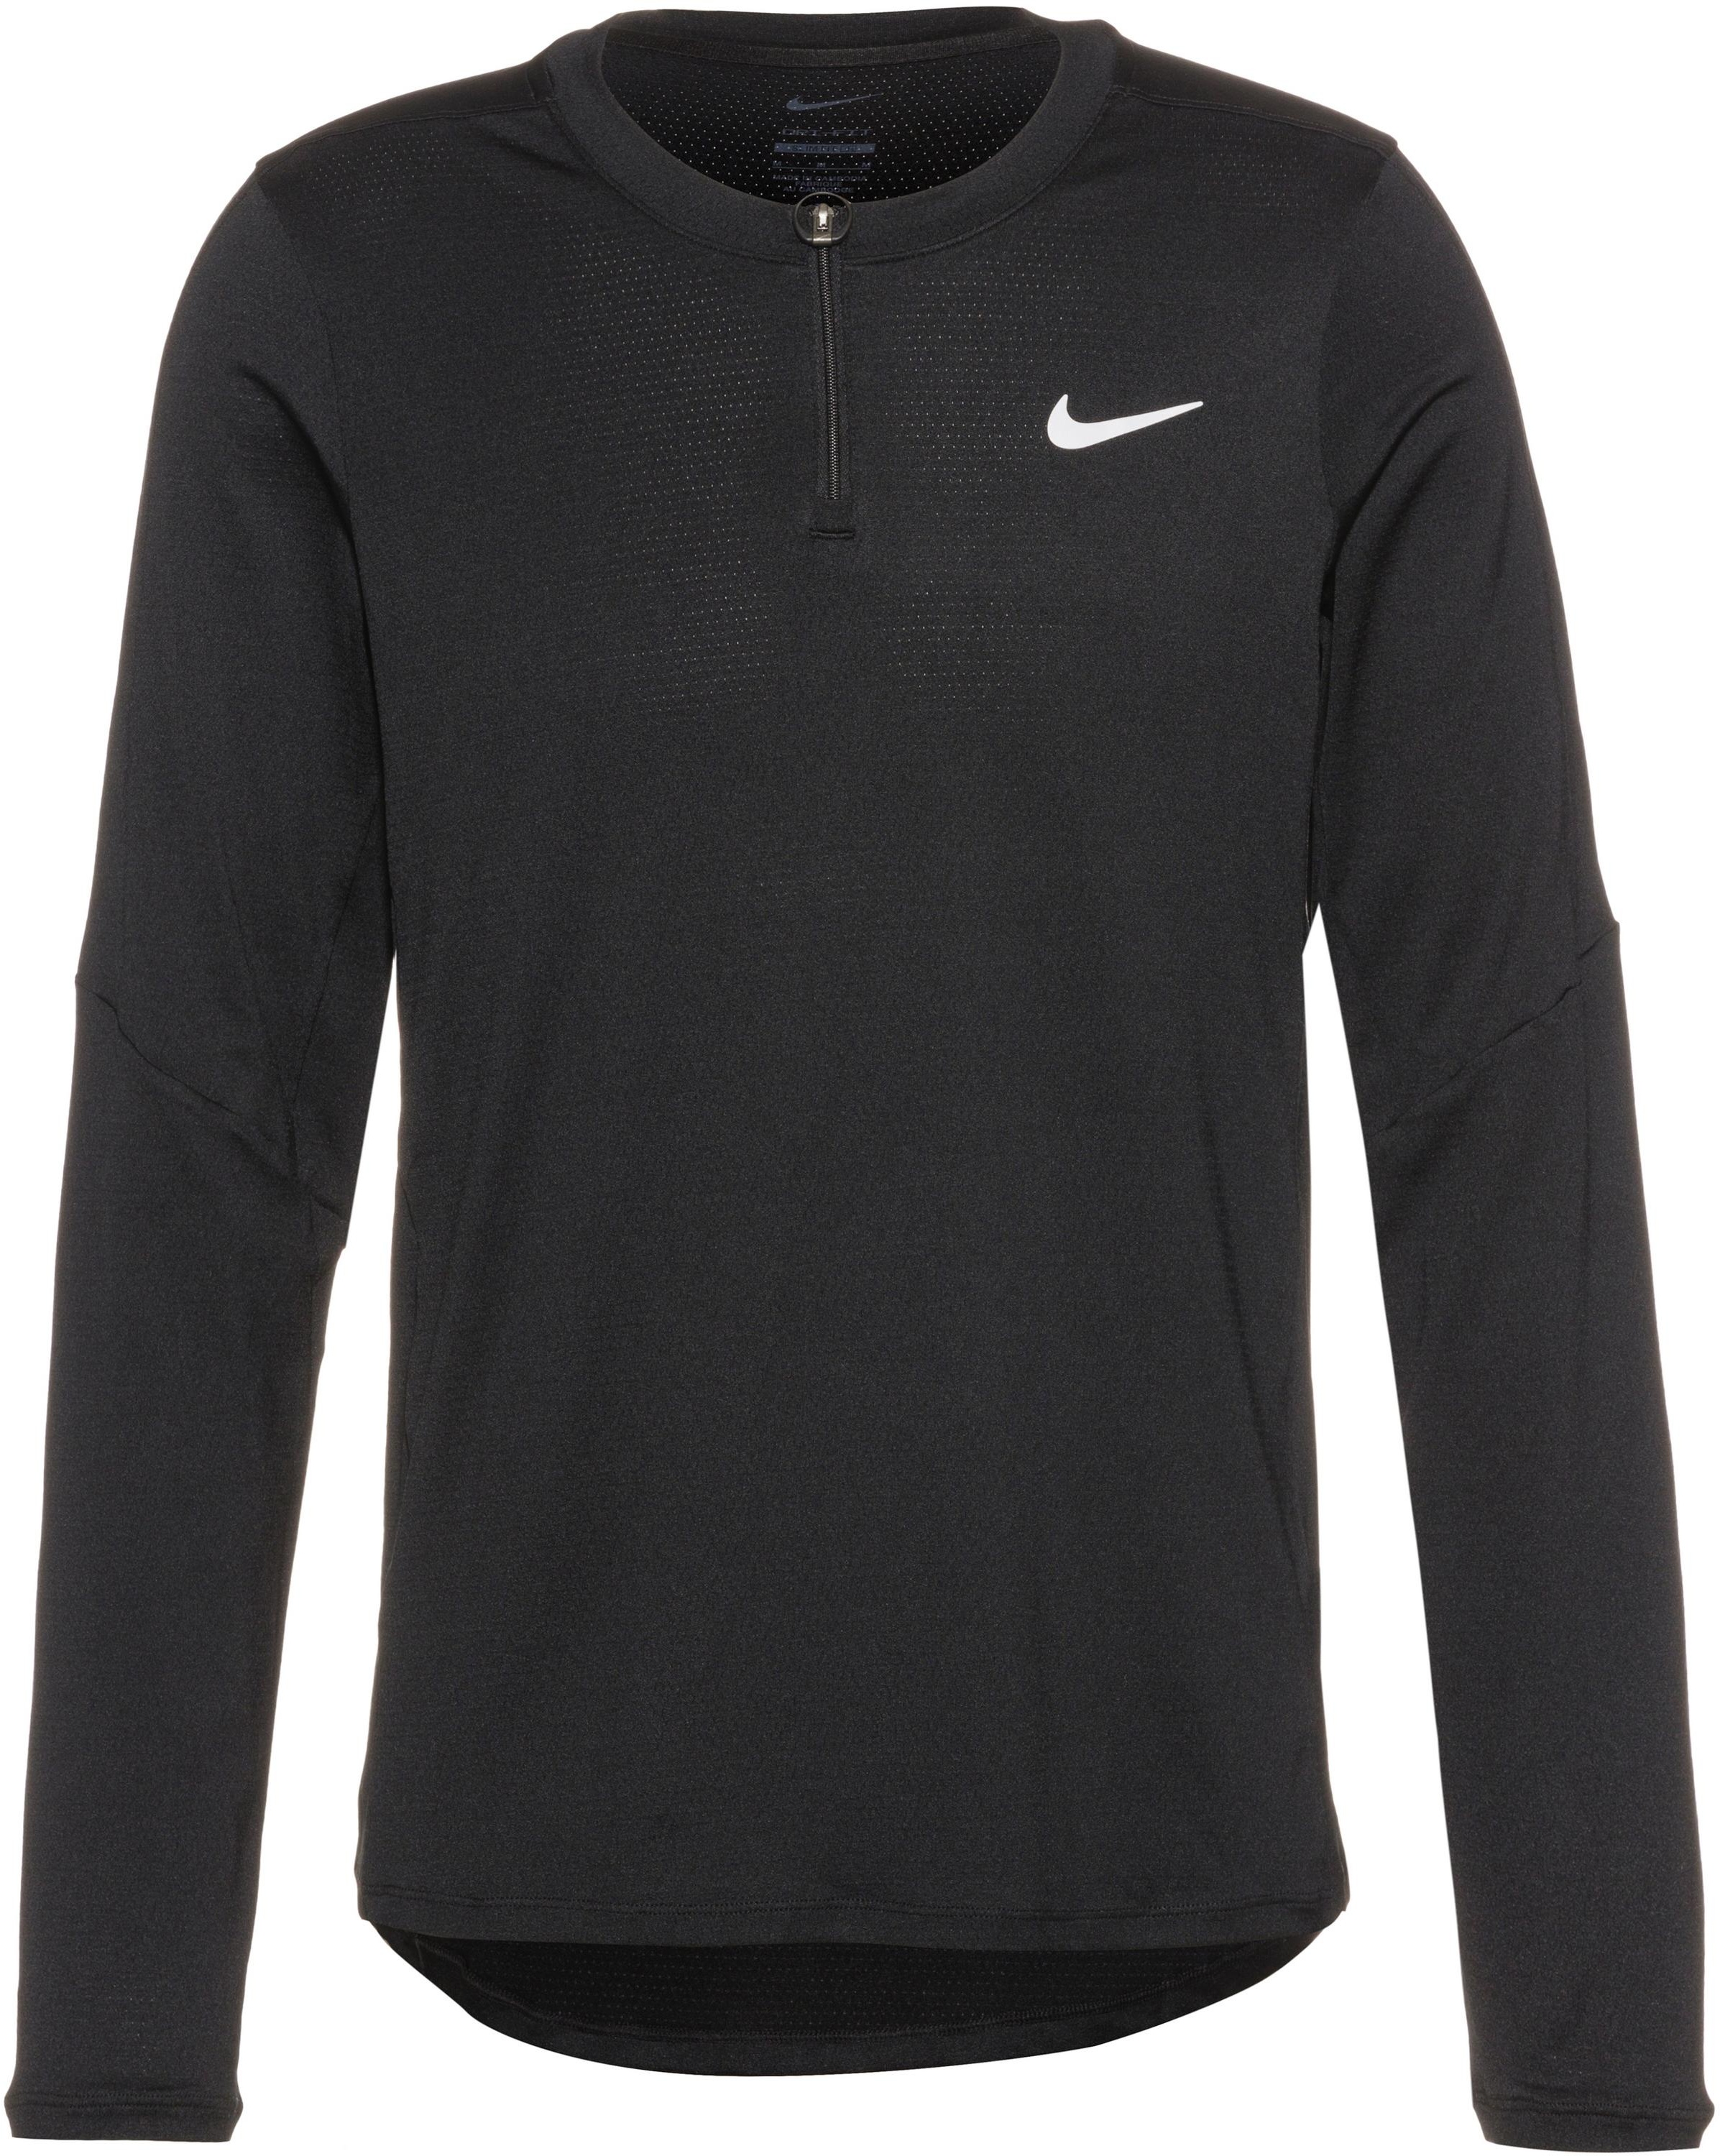 Nike COURT ADVANTAGE Tennisshirt Herren in black-black-white, Größe M - schwarz